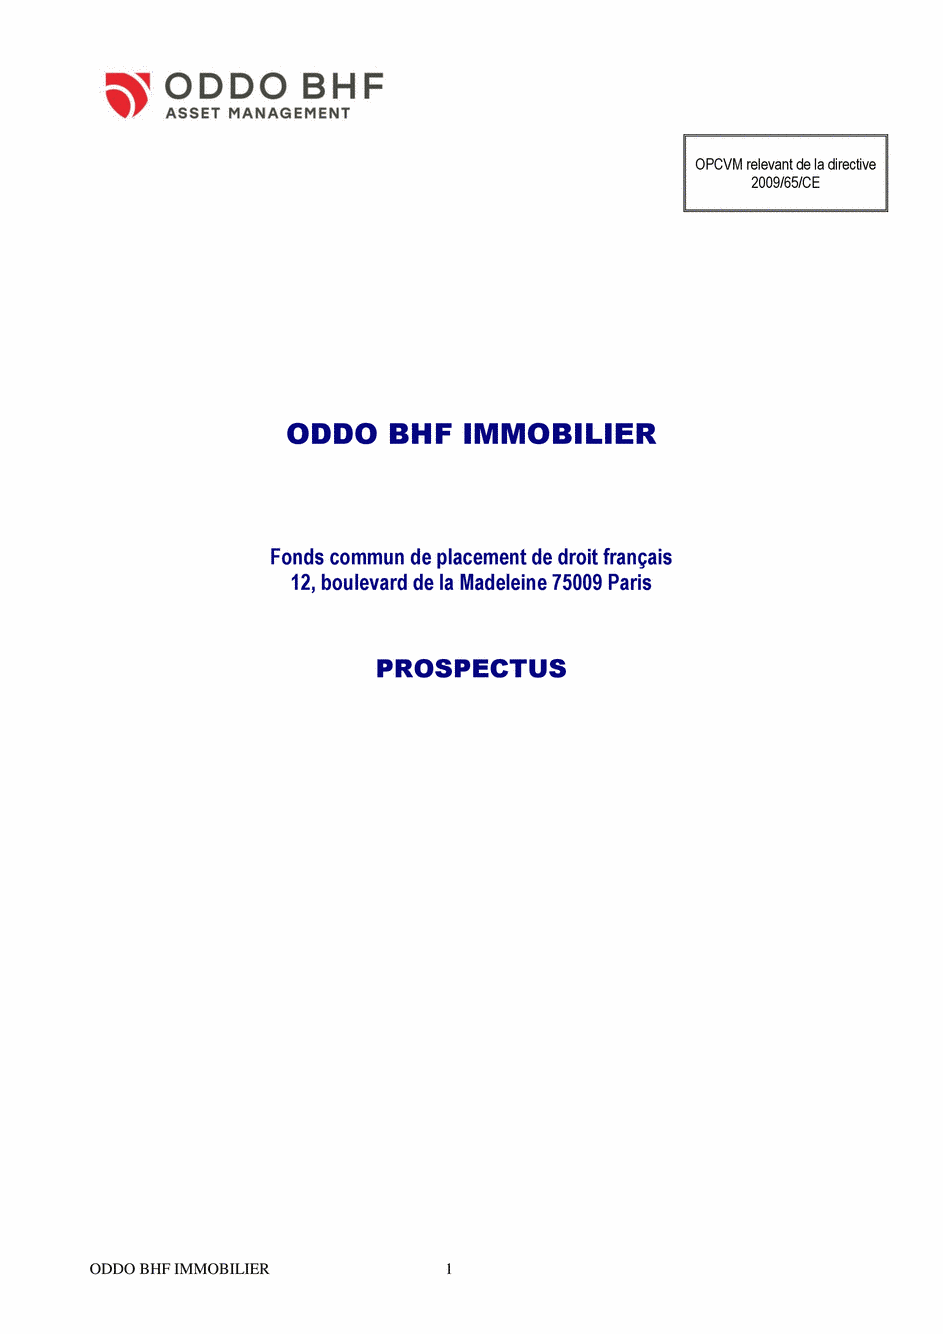 Prospectus ODDO BHF IMMOBILIER CN-EUR - 12/11/2019 - Français